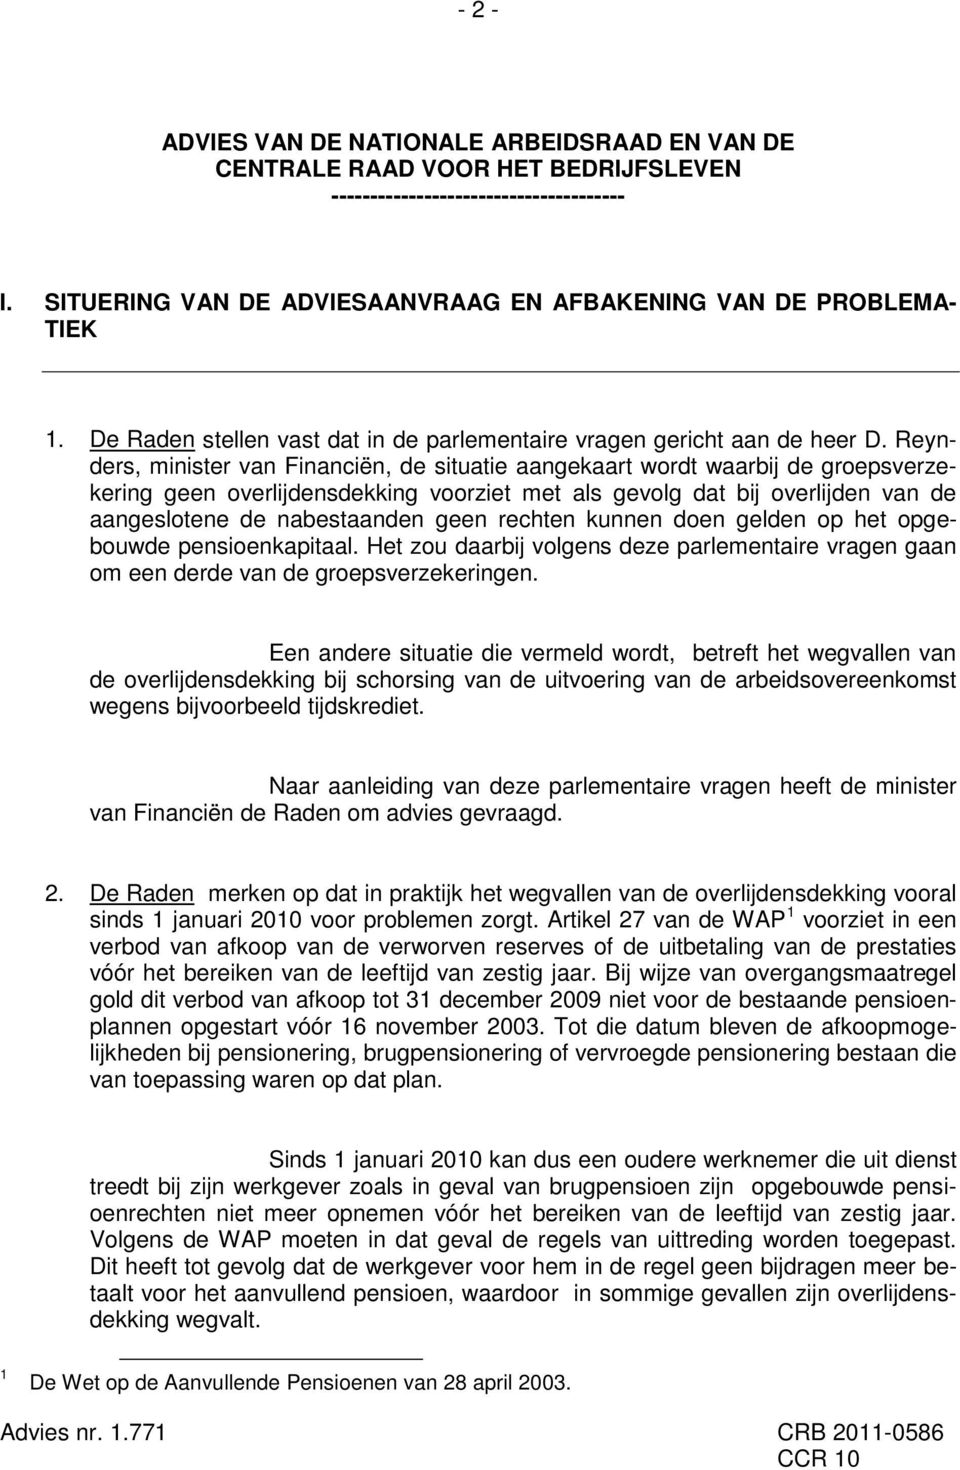 Reynders, minister van Financiën, de situatie aangekaart wordt waarbij de groepsverzekering geen overlijdensdekking voorziet met als gevolg dat bij overlijden van de aangeslotene de nabestaanden geen